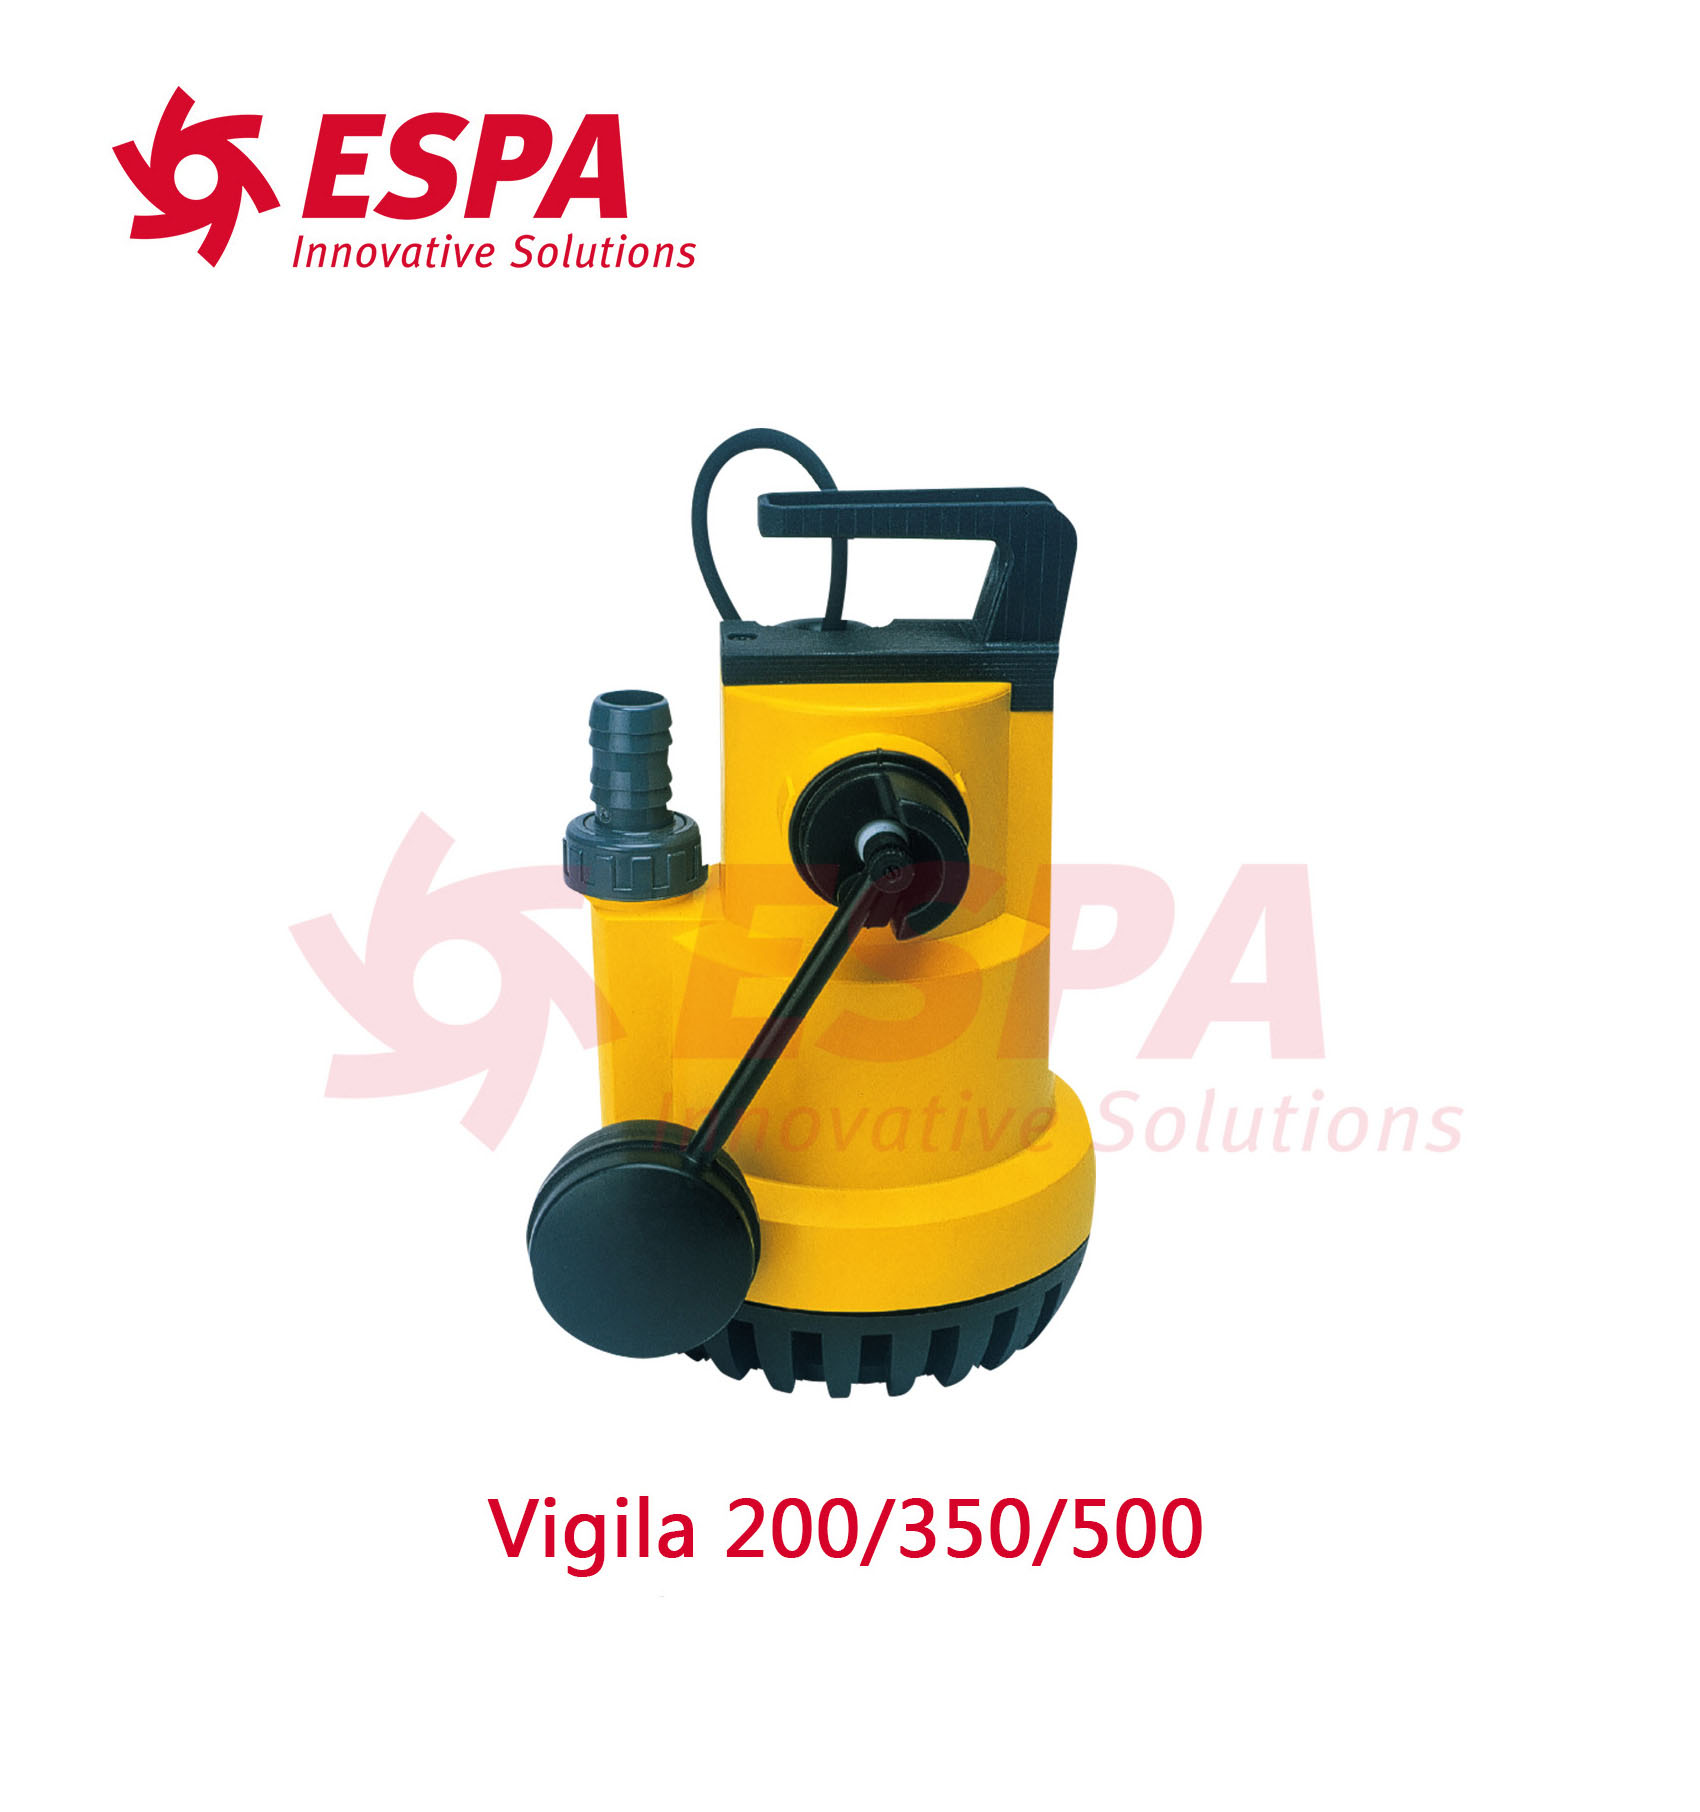 西班牙亚士霸ESPA潜污泵排污泵污水泵Vigila 200/350/500